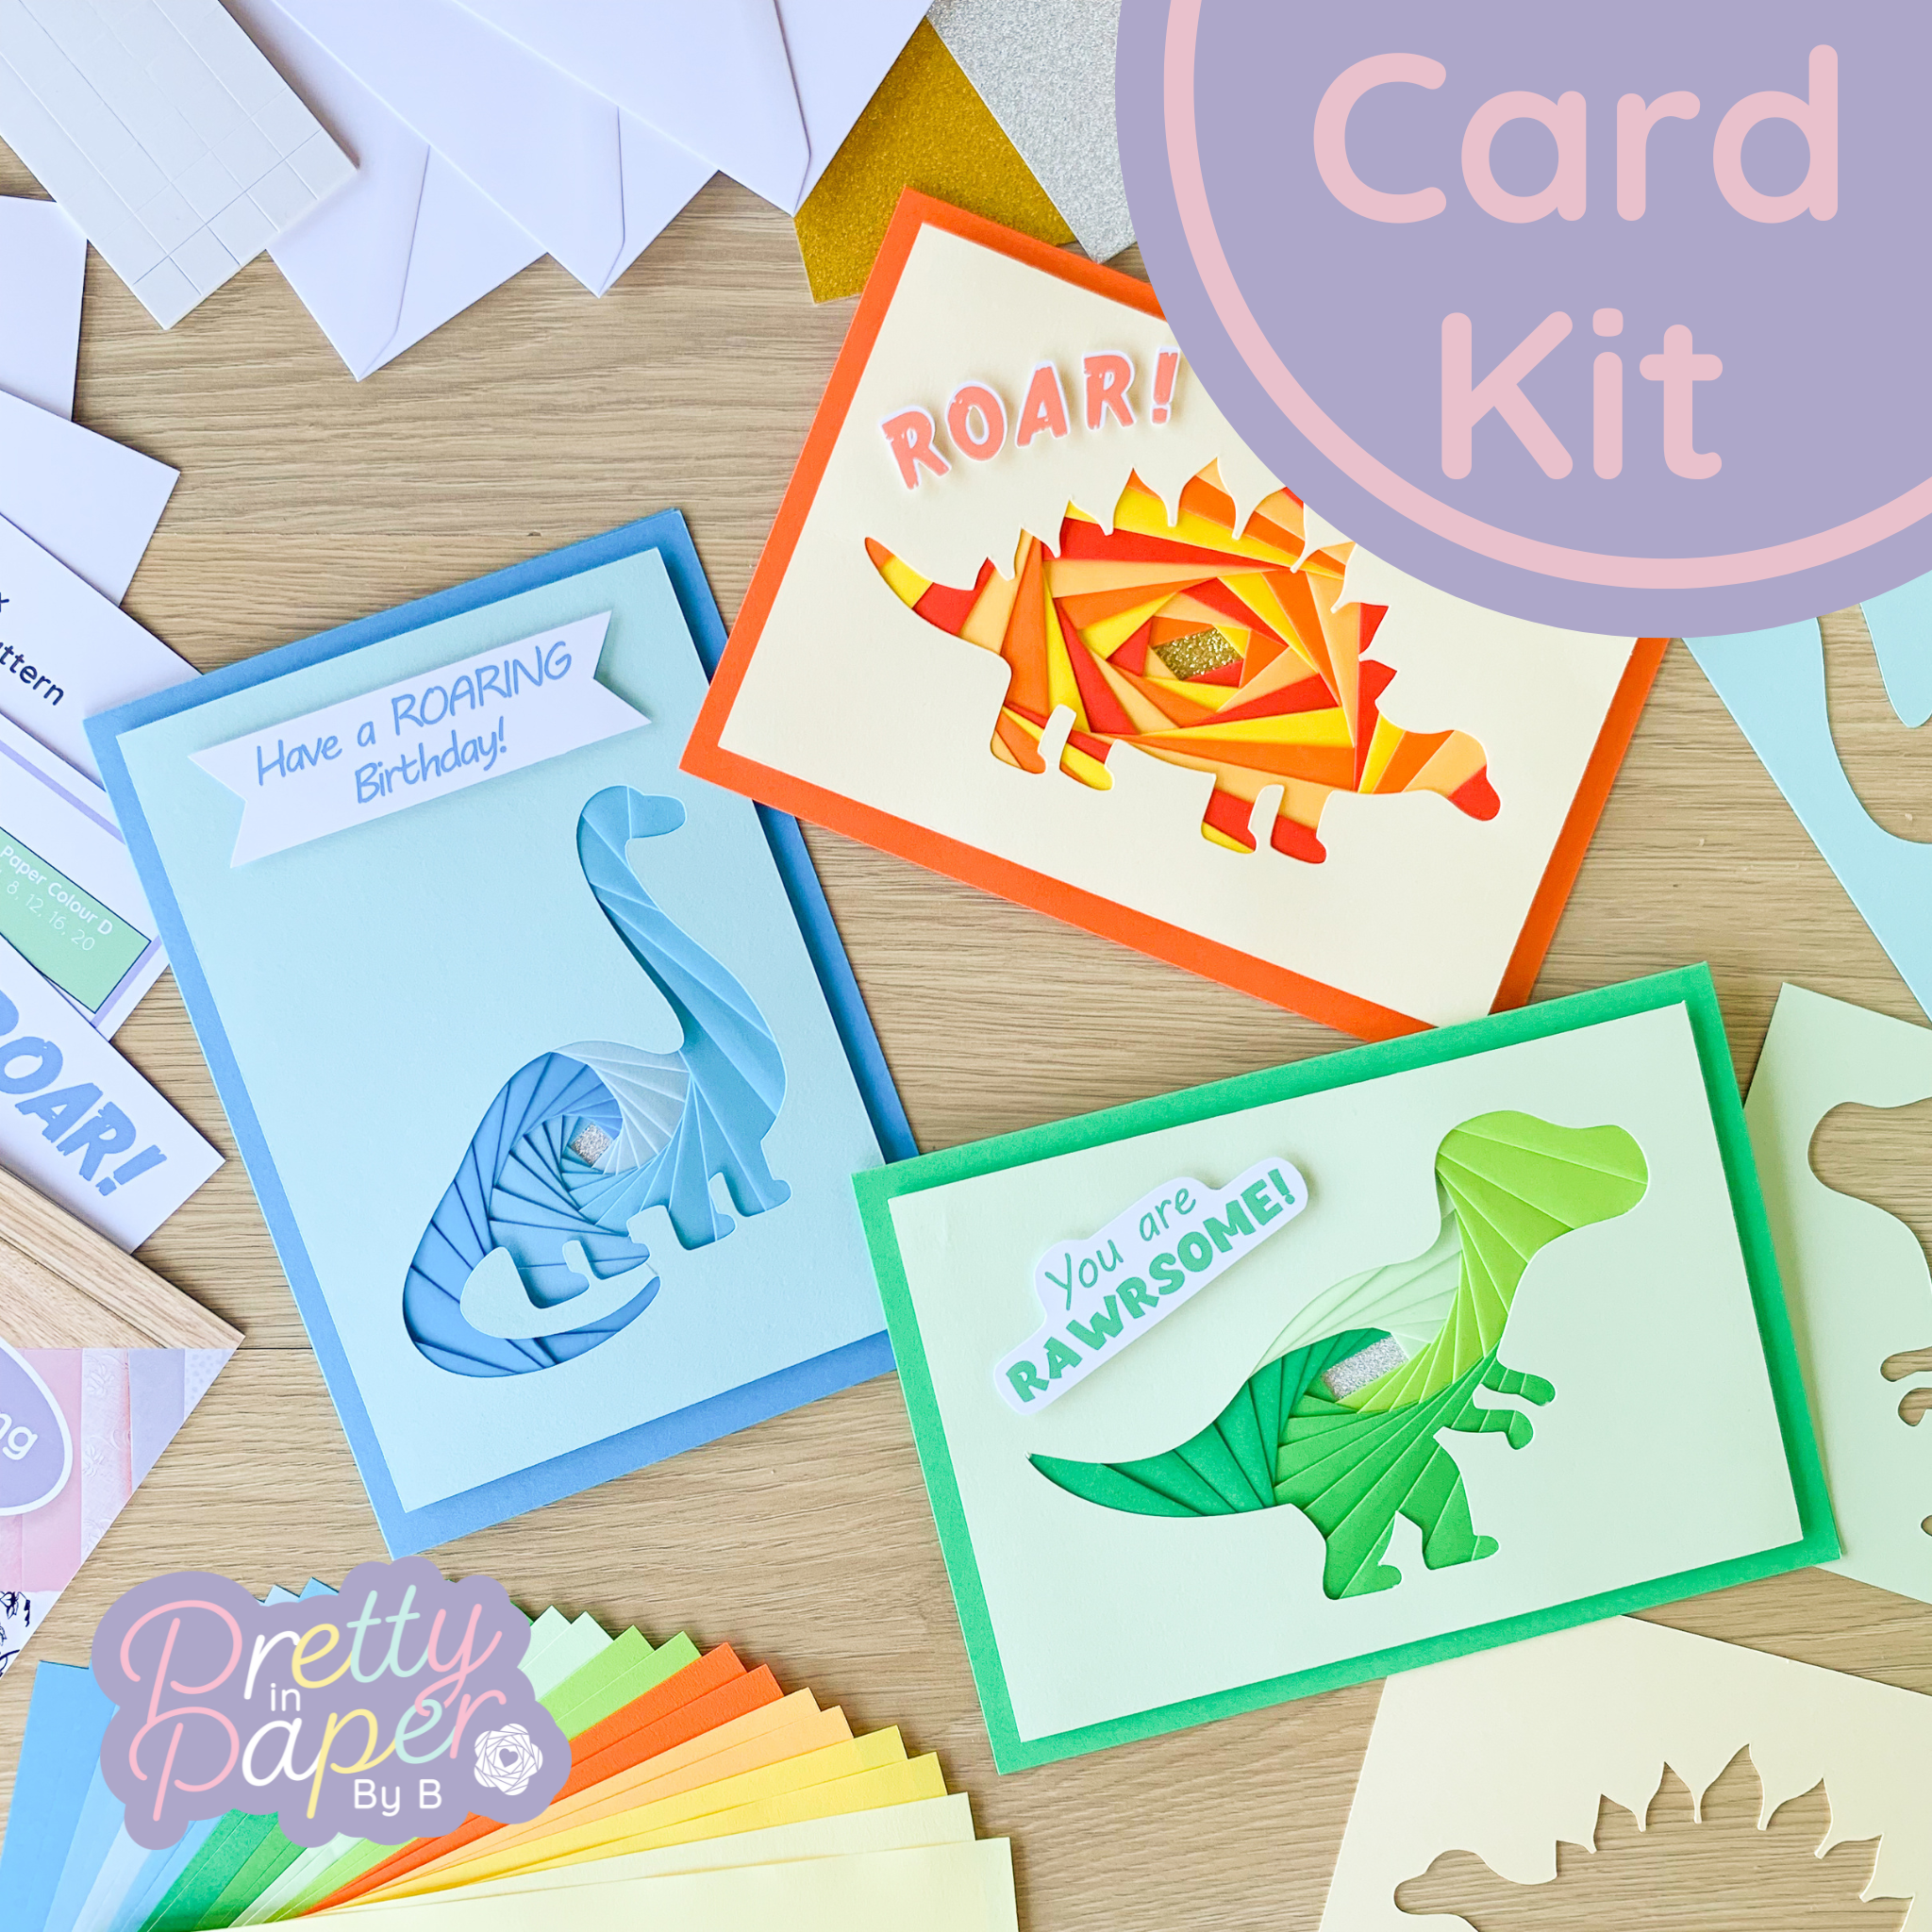 Dinosaur Card Making Kit, Iris Folding Craft Kit Beginners